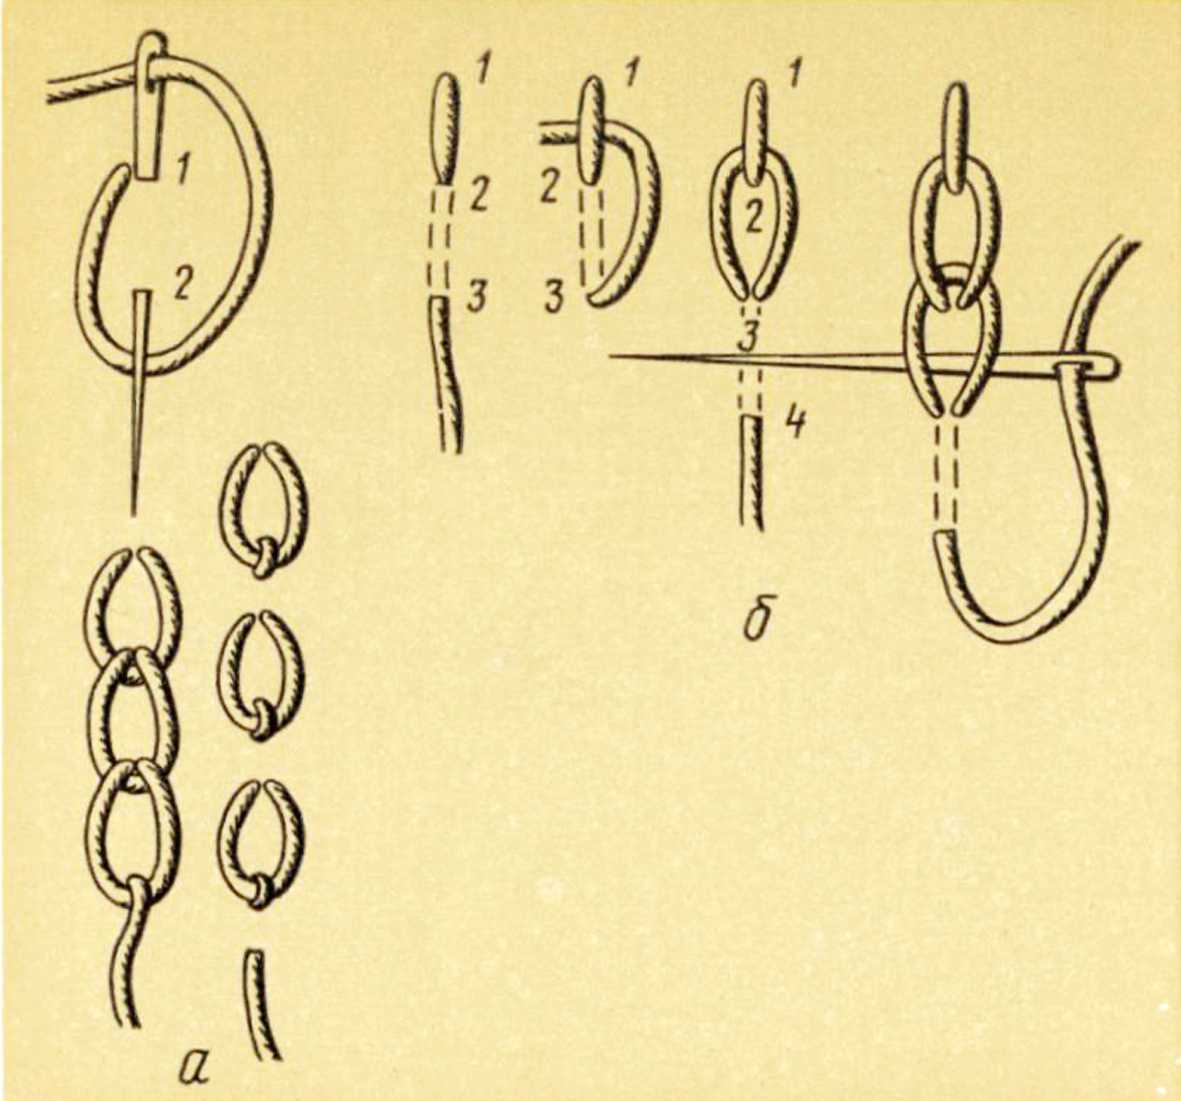 Тамбурный шов - подробная инструкция вышивки для начинающих иголкой или крючком с фото